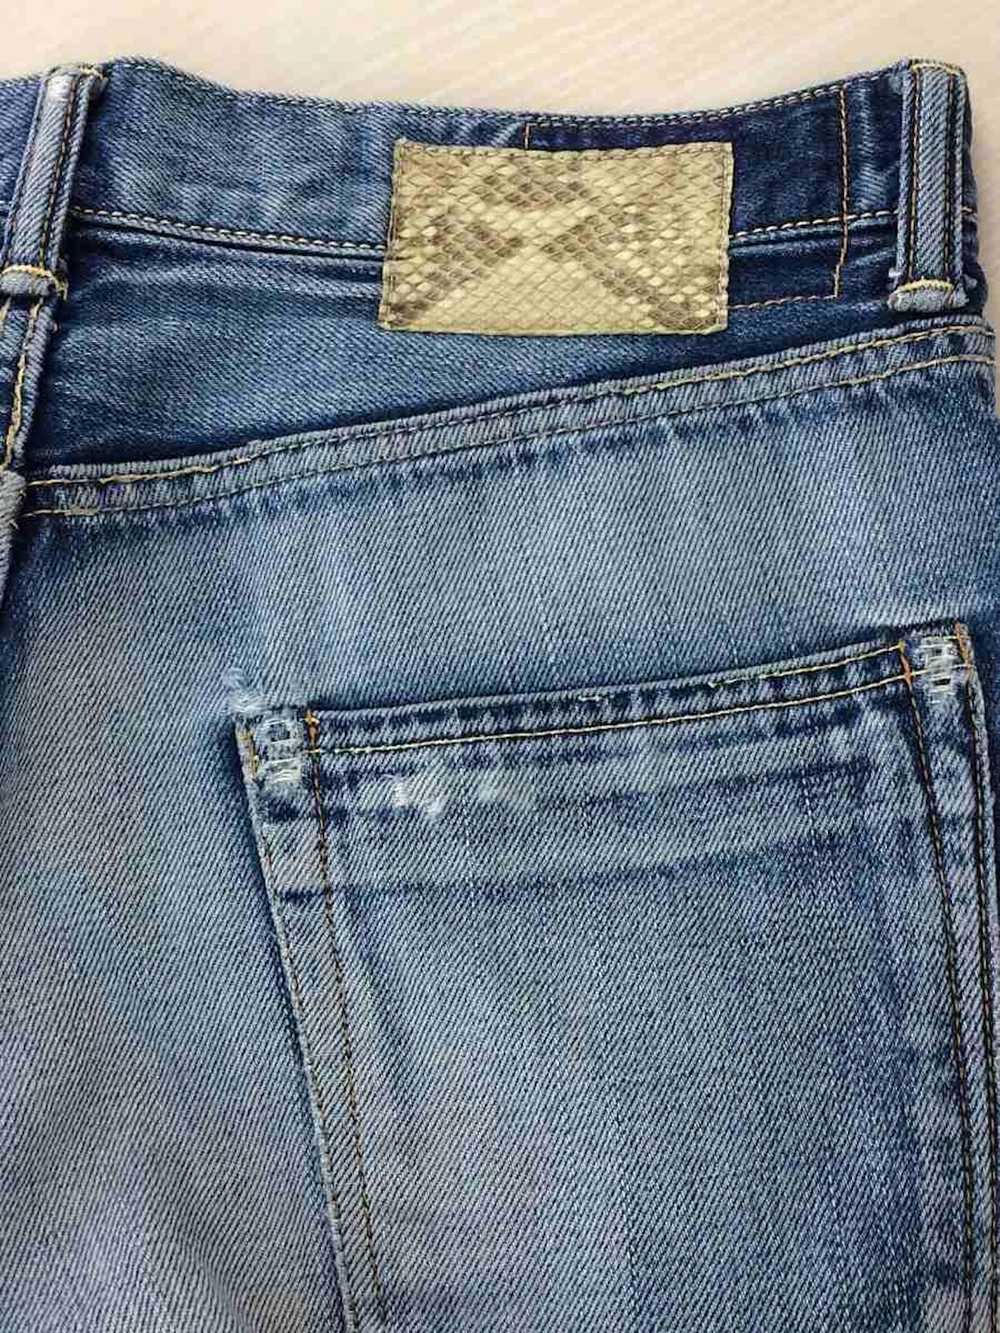 Visvim Indigo Jeans - image 8